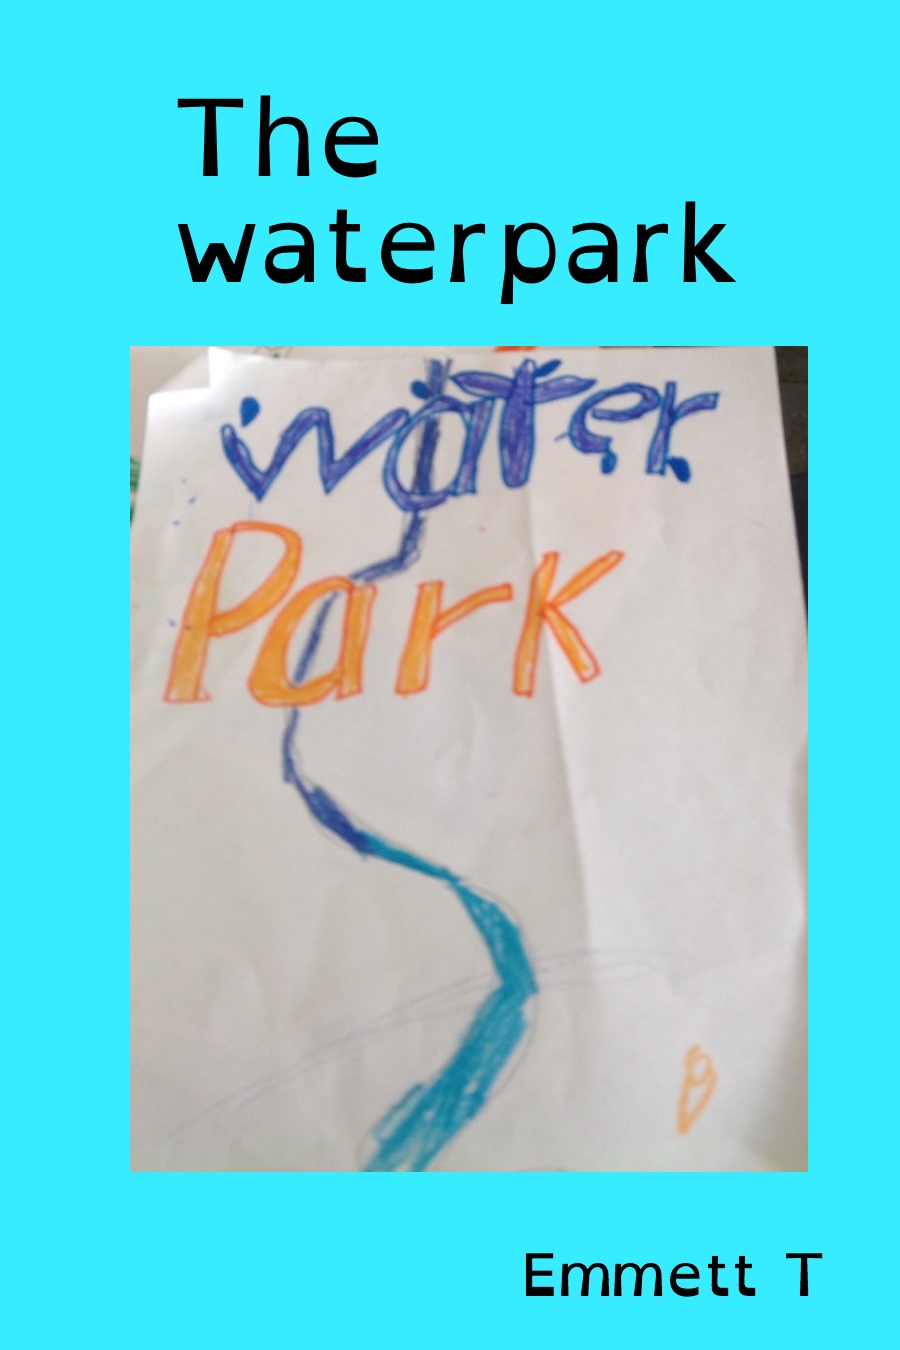 The Waterpark by Emmett T